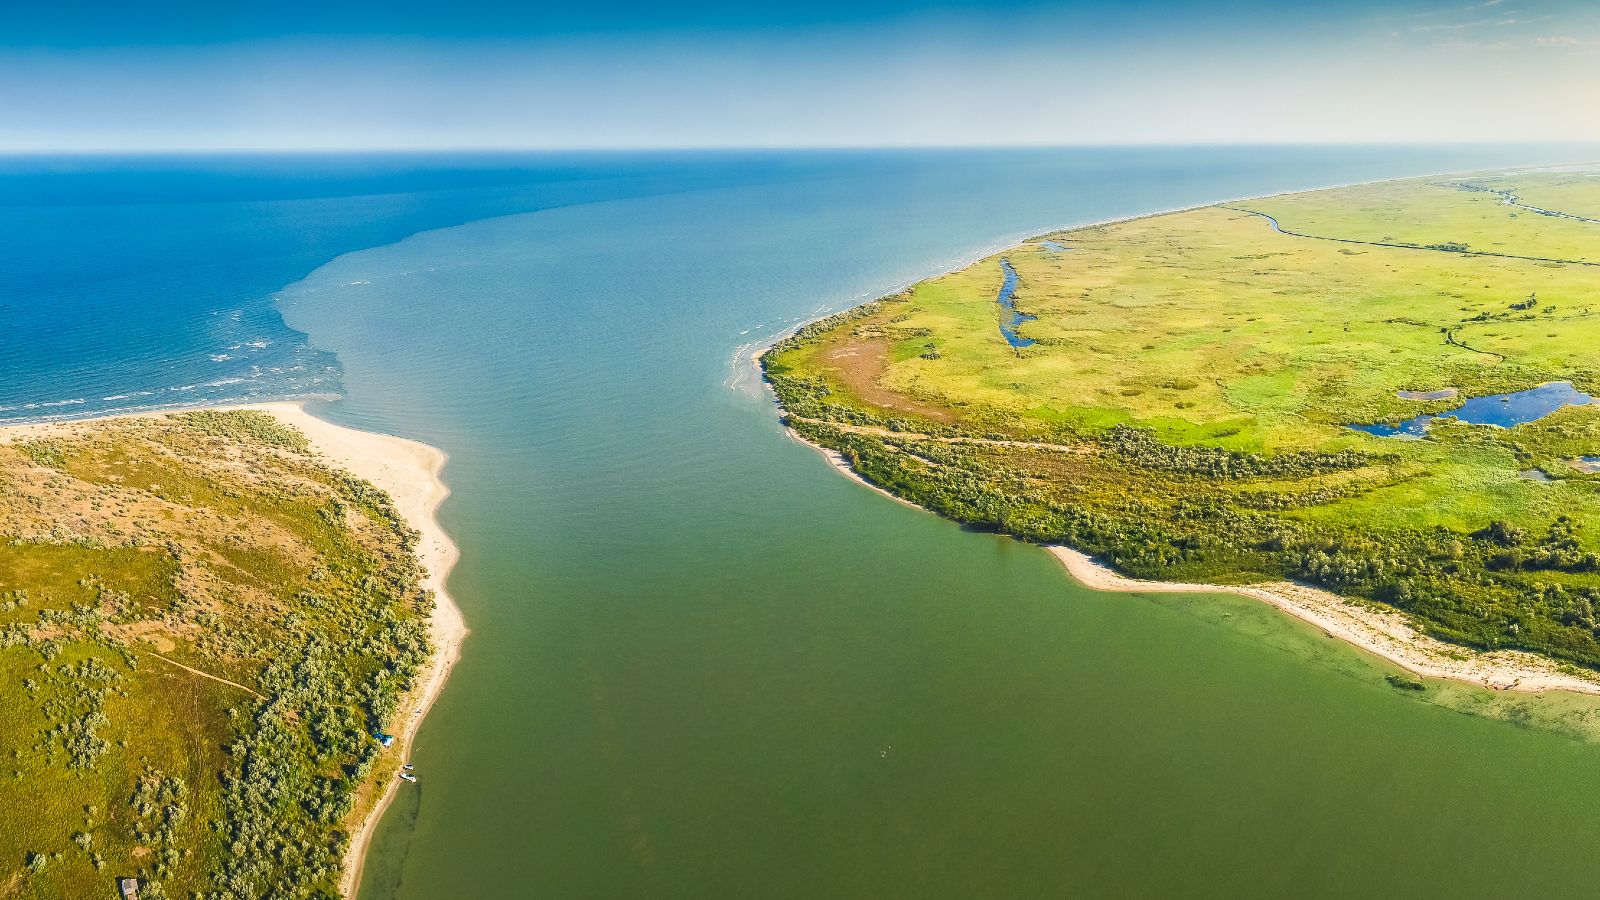 Blick aus der Vogelperspektive auf eine flache Küstenlandschaft mit grünen Wiesen und Sandstränden